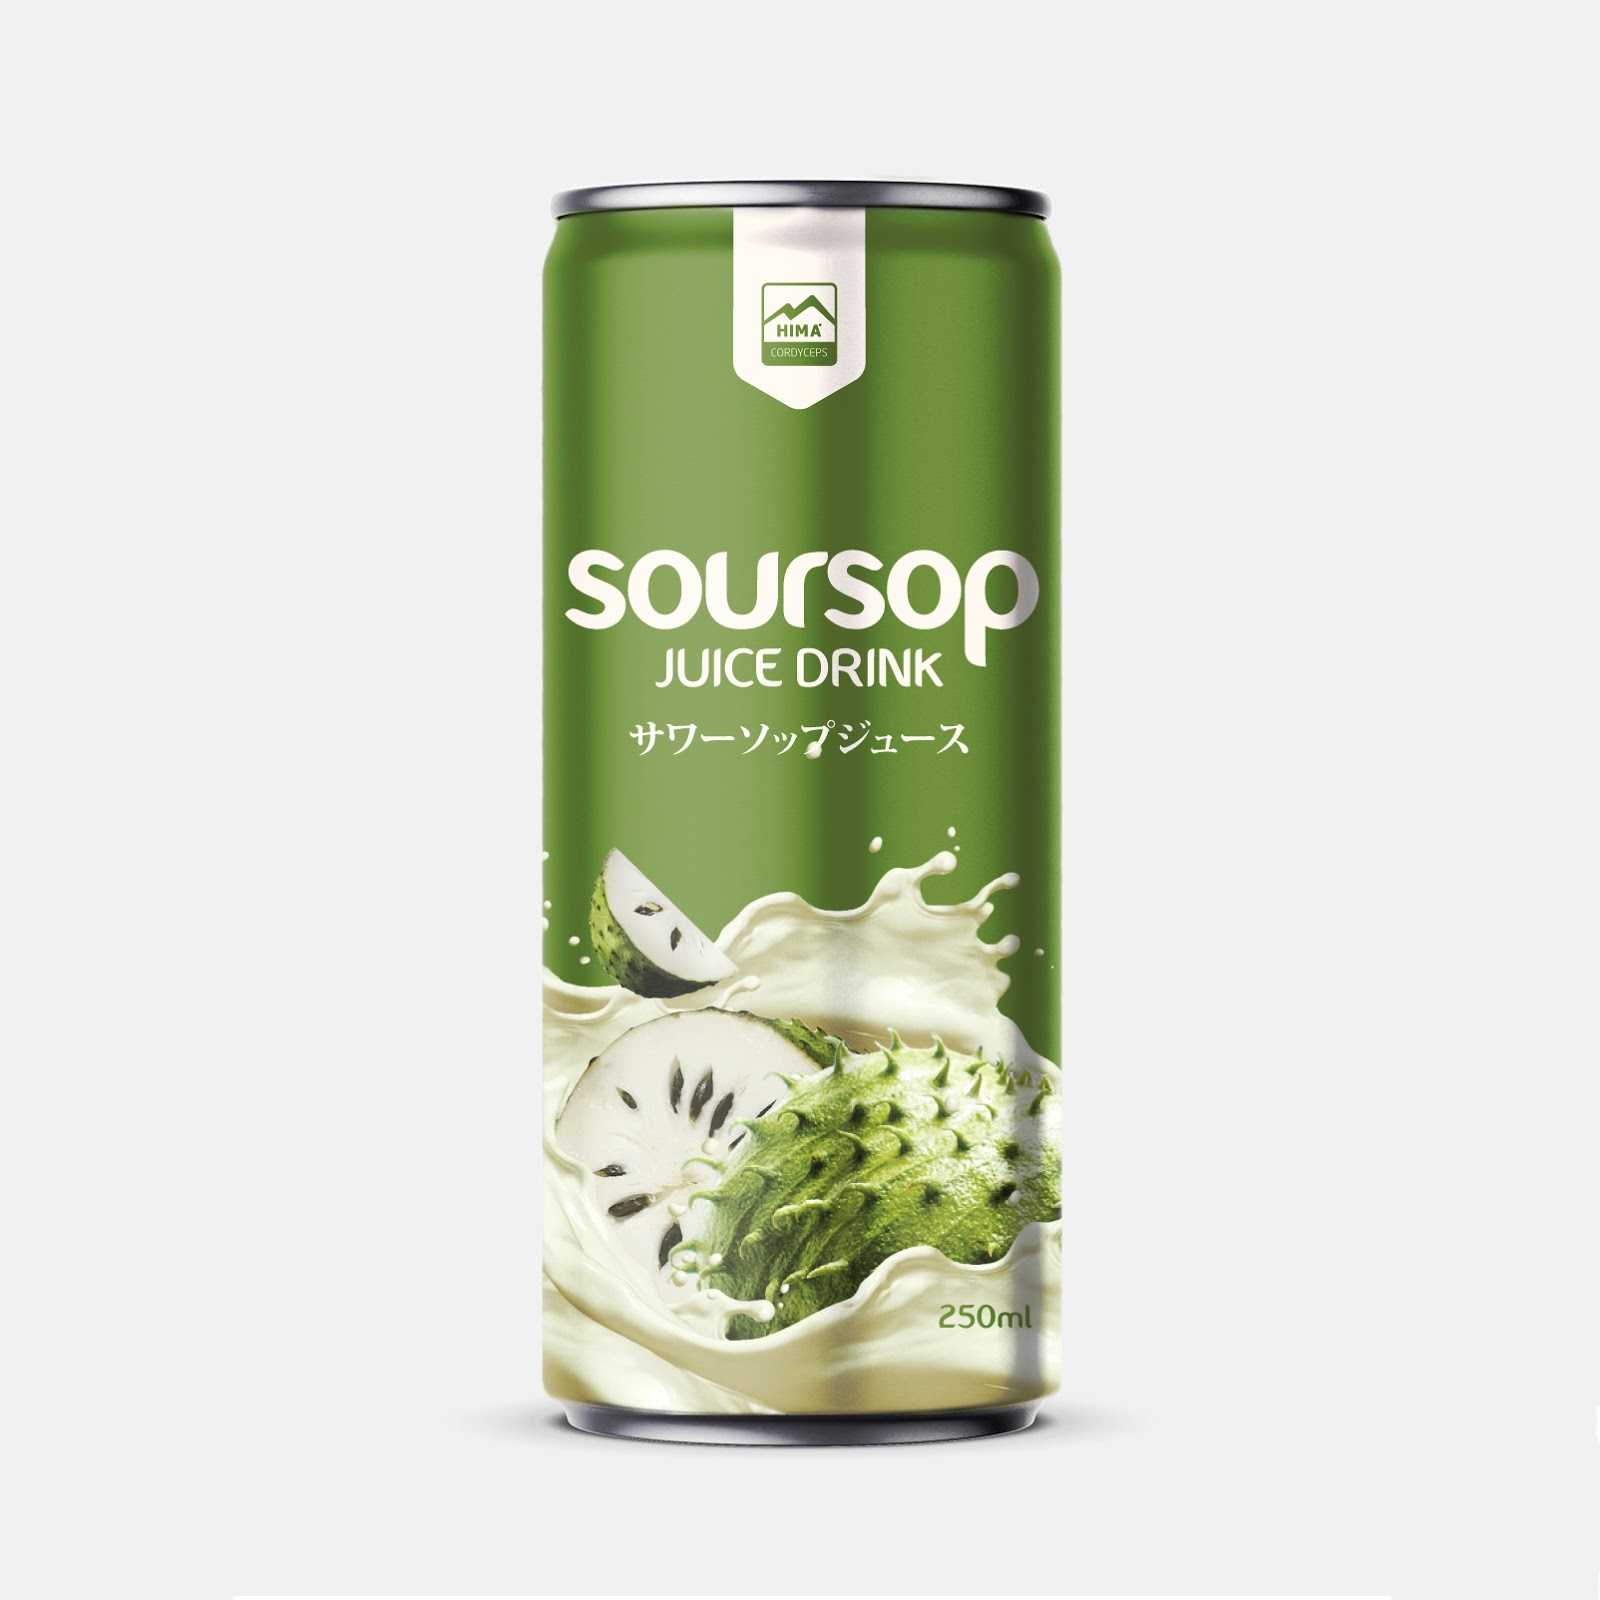 饮料日本酸枣汁西安oe欧亿体育app官方下载
品牌策划包装设计VI设计logo设计